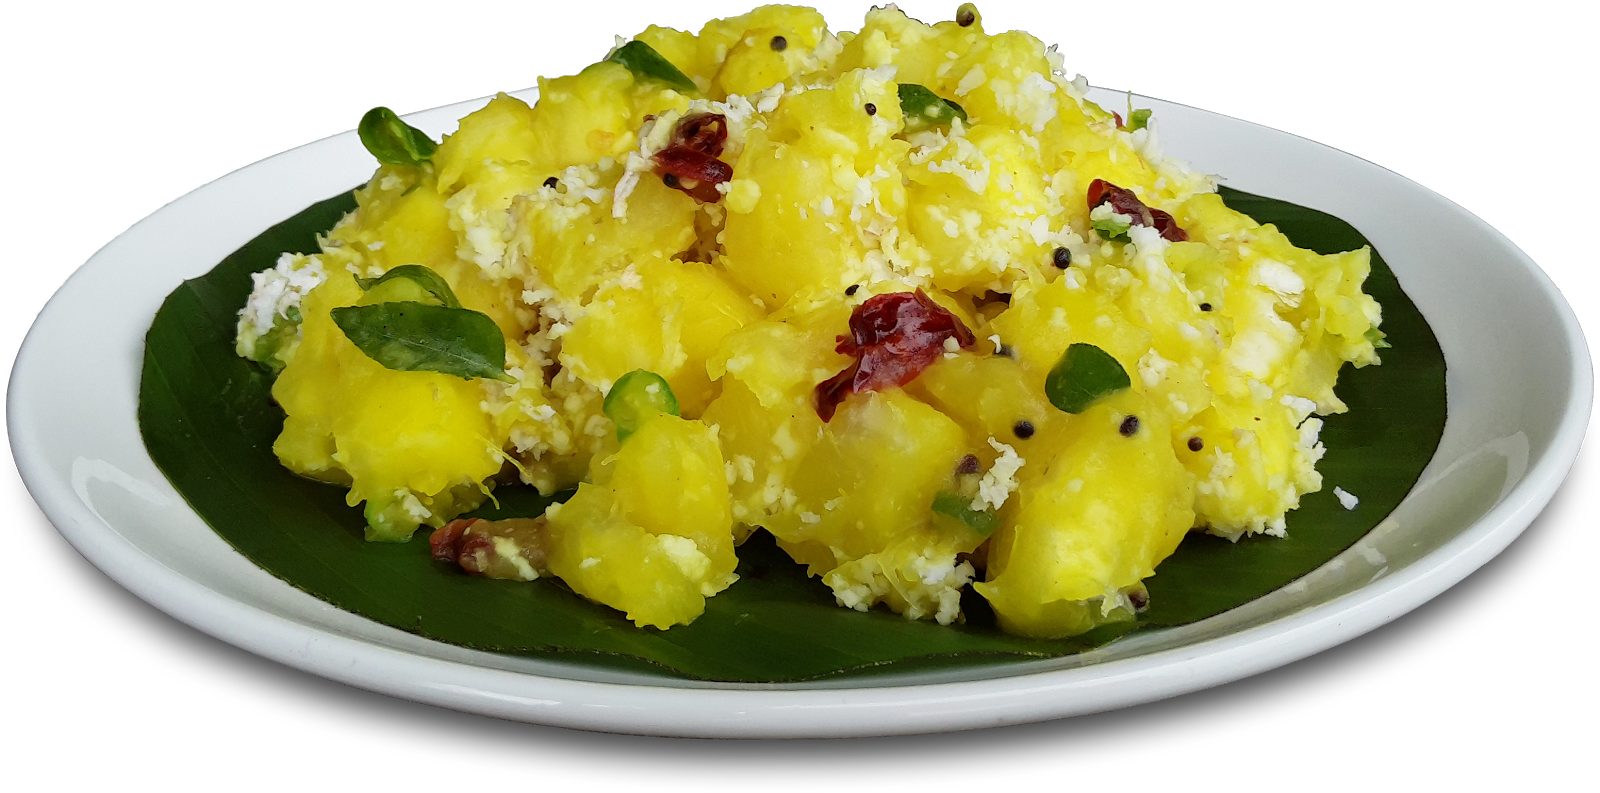 321) Kappa With Mulake Chammandi - Kerala Food Images Png (1600x793), Png Download